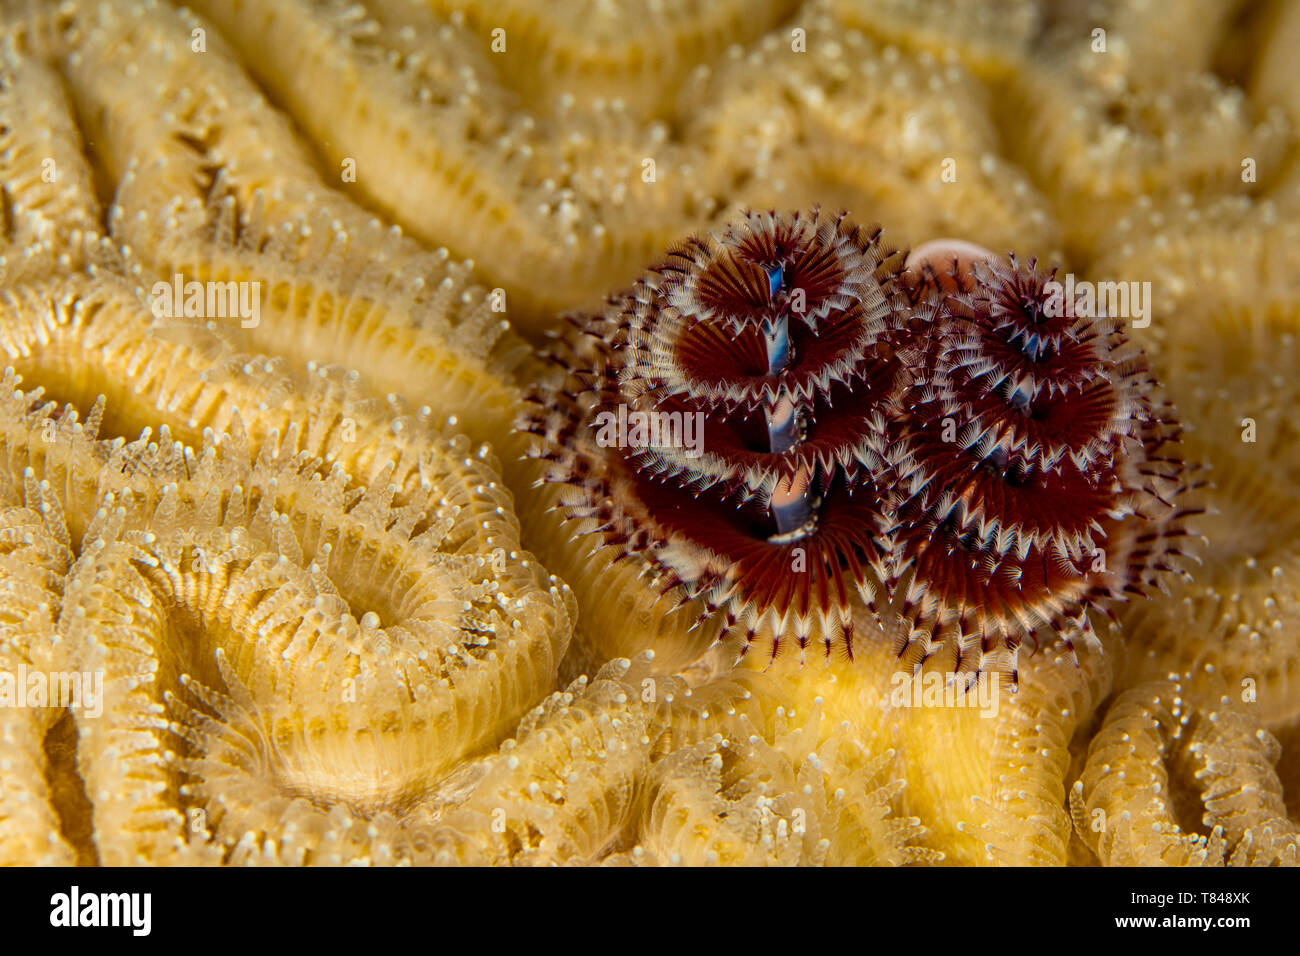 Unterwasser Blick auf Paar Weihnachtsbaum Worms (spirobranchus giganteous), Nahaufnahme, Eleuthera, Bahamas Stockfoto